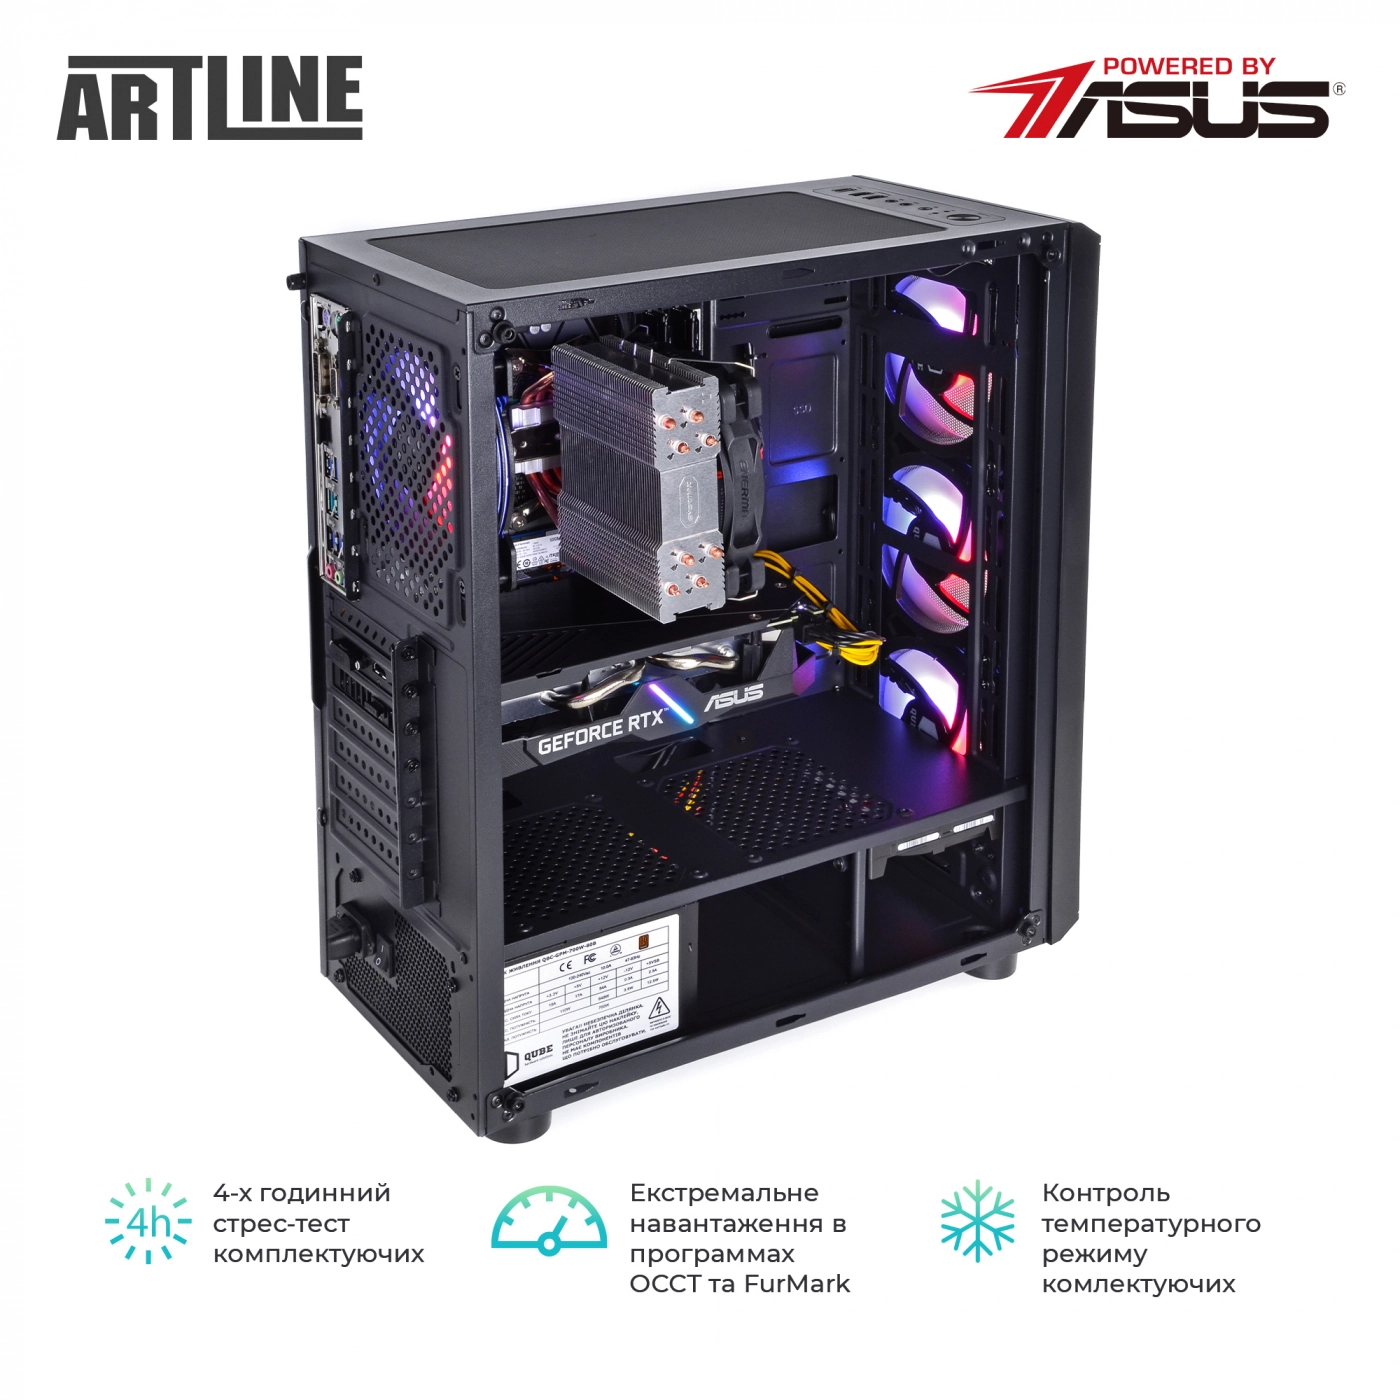 Купить Компьютер ARTLINE Gaming X83v06 - фото 9